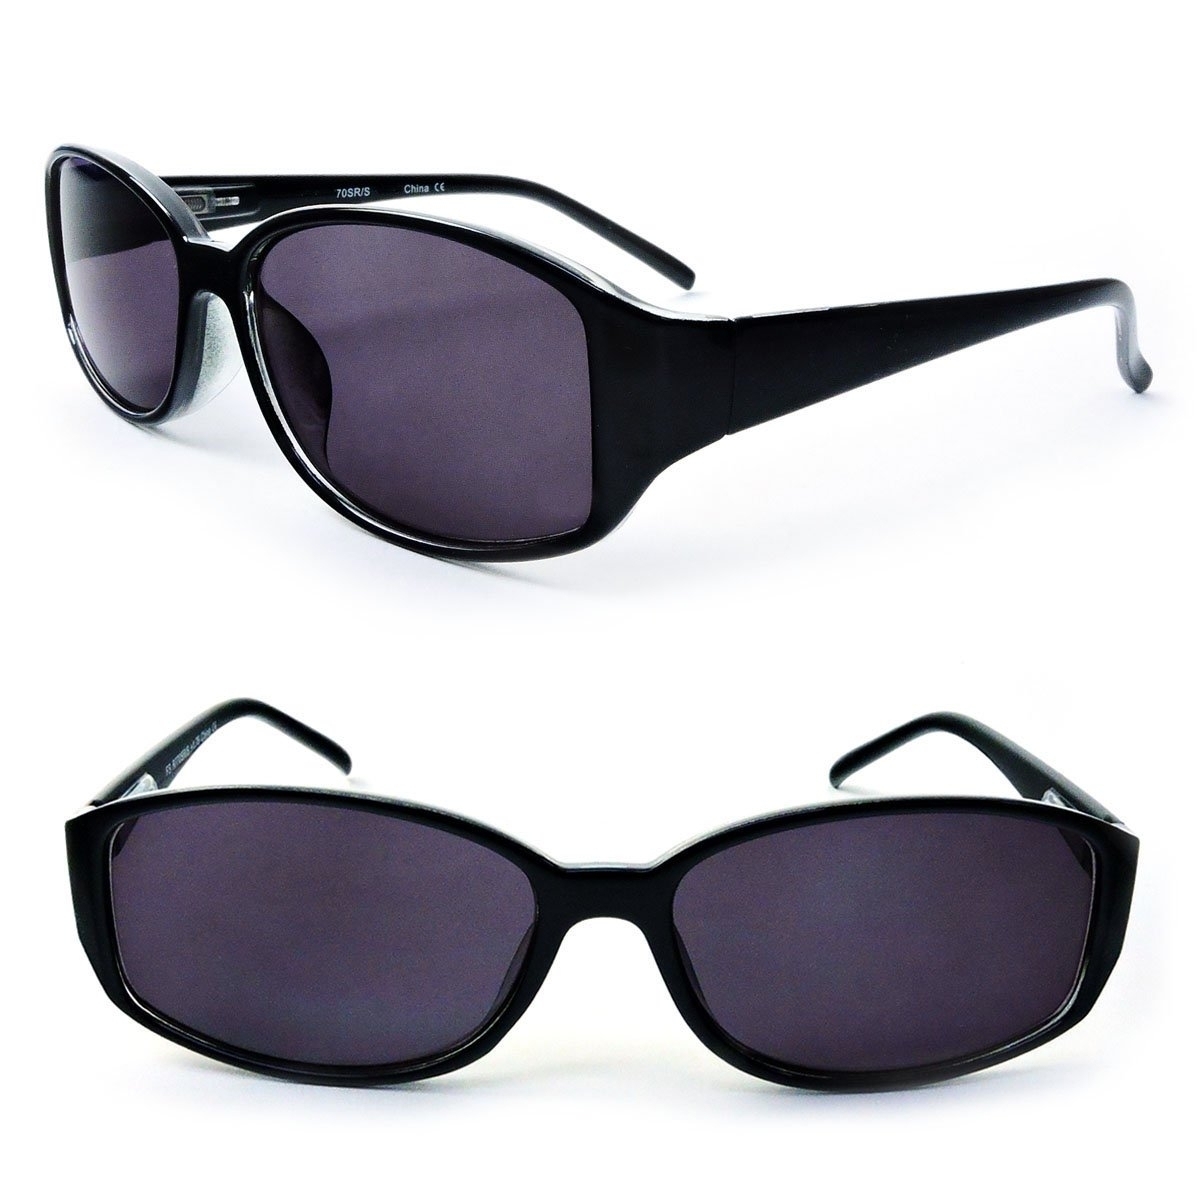 Classic Sun Readers Full Lens Spring Hinges Reading Sunglasses For Women - Black, +4.00